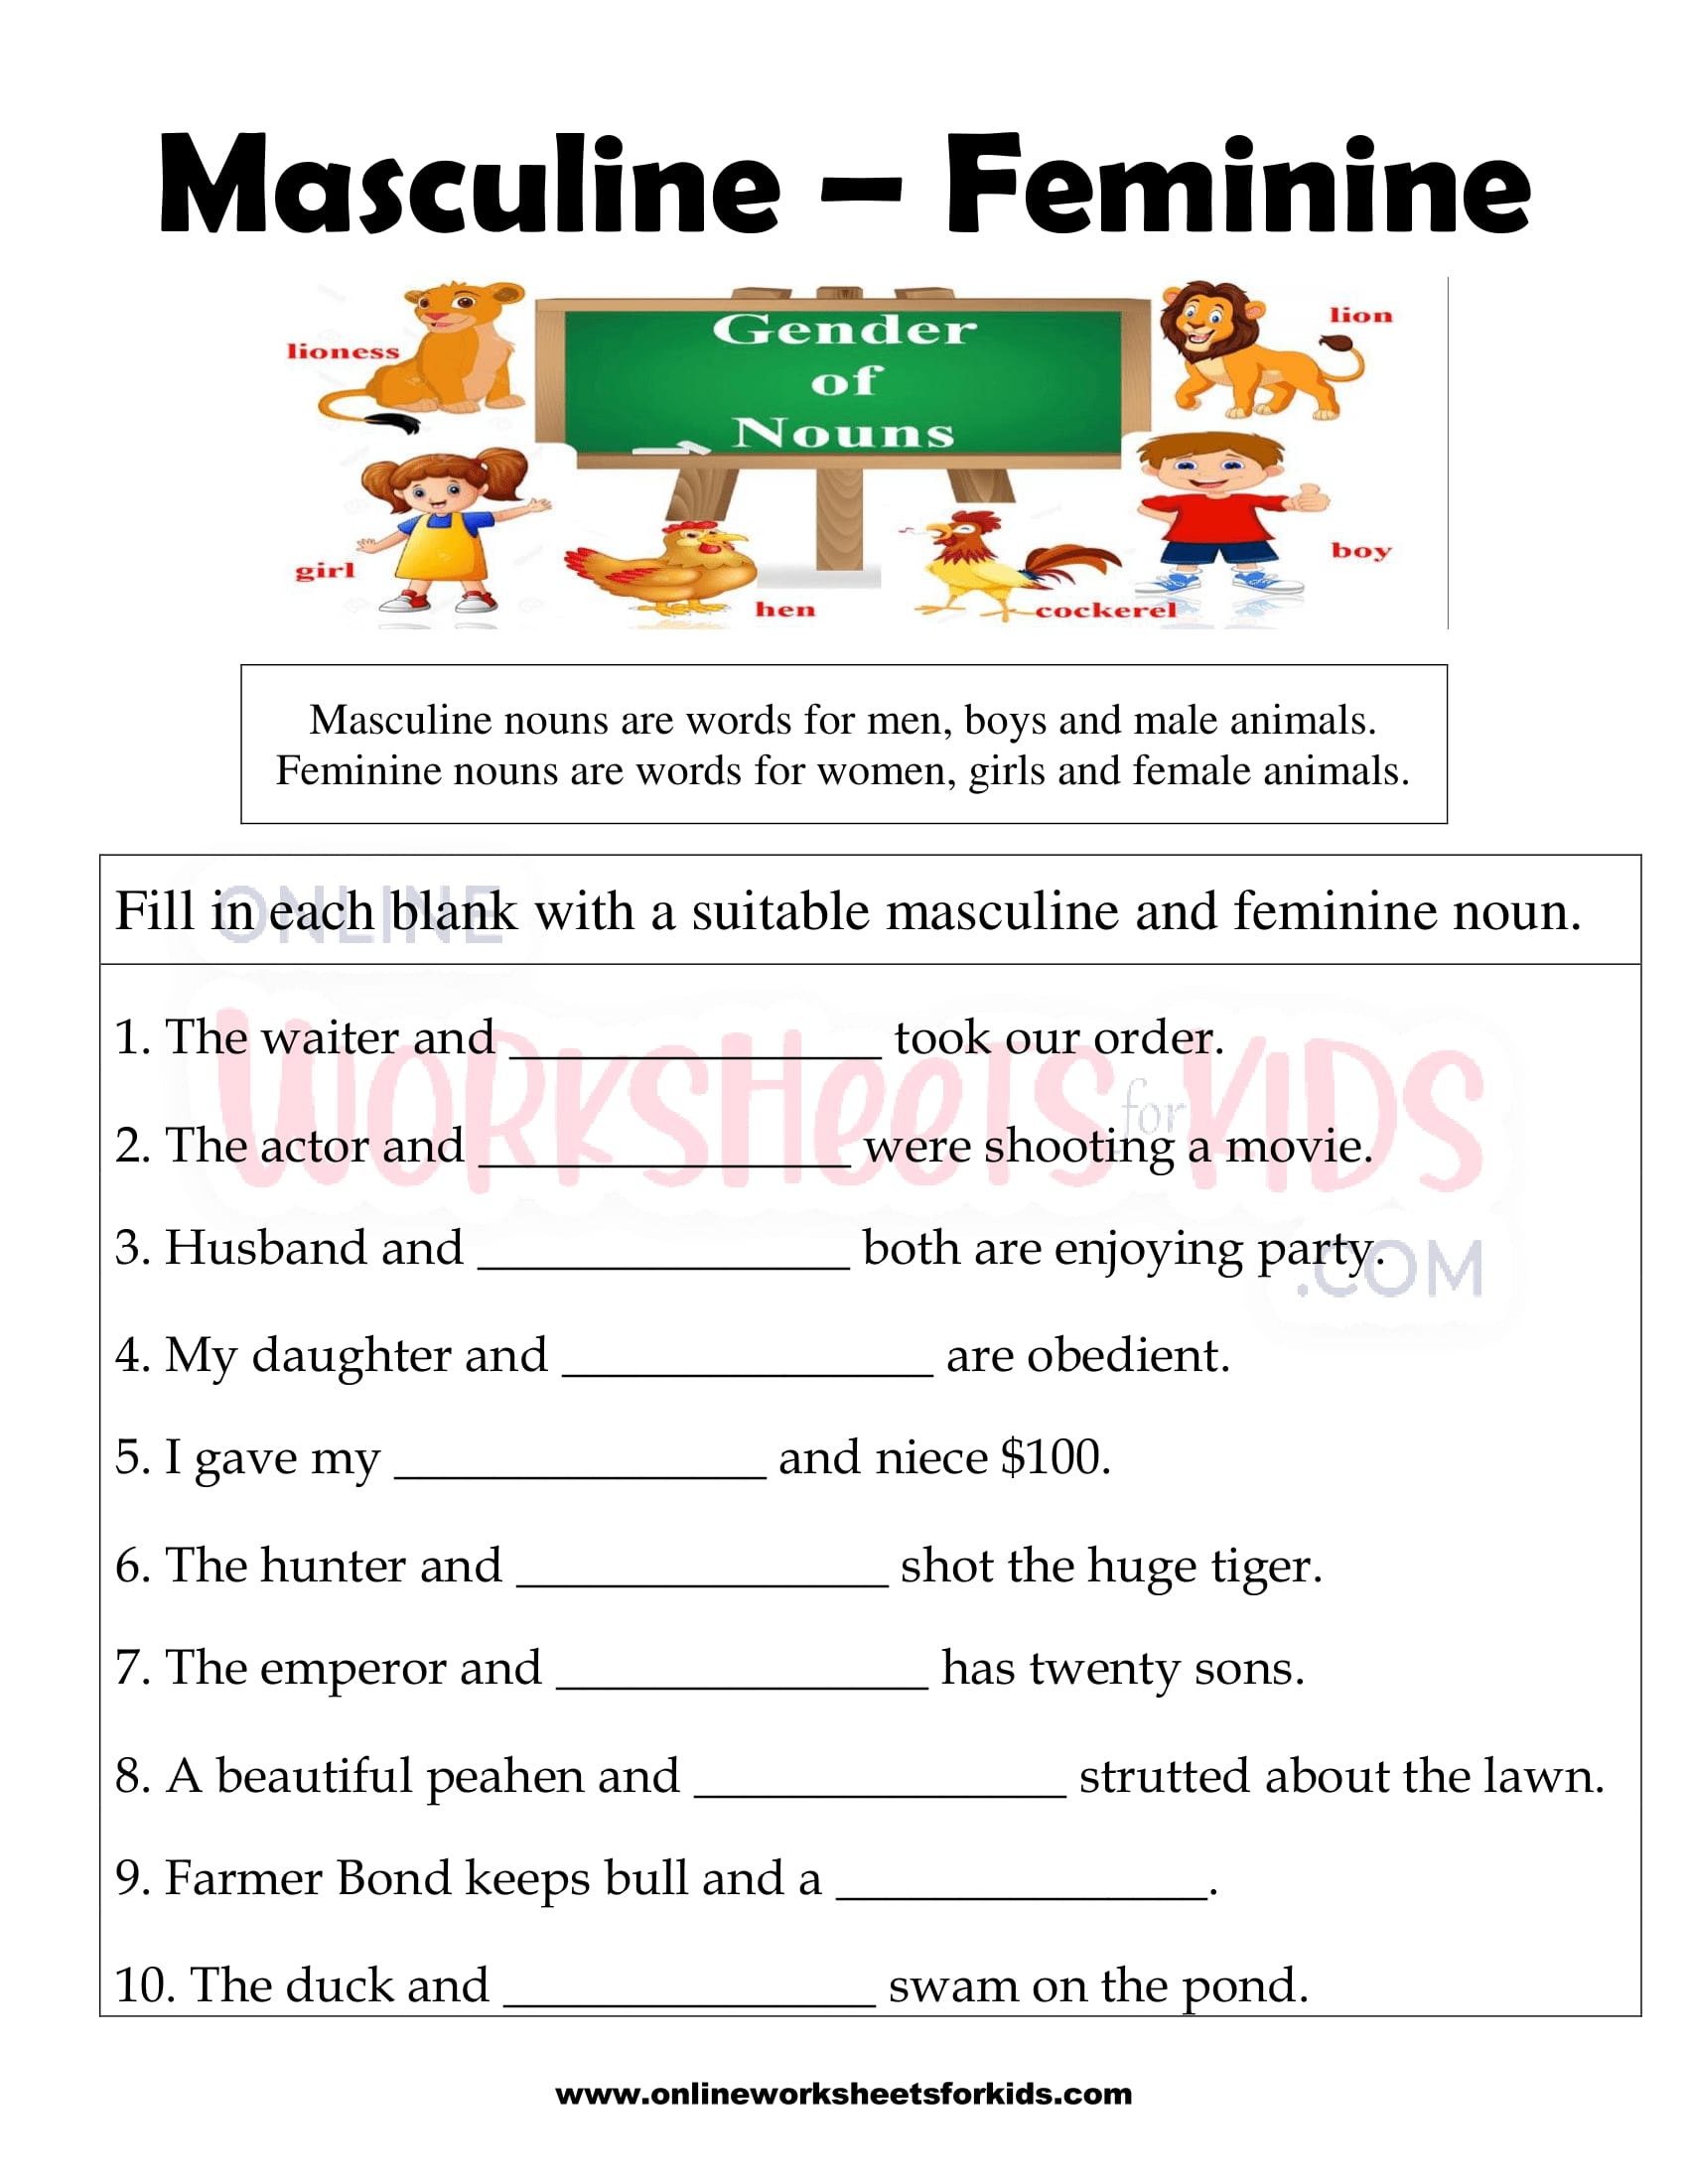 masculine-and-feminine-gender-worksheets-12